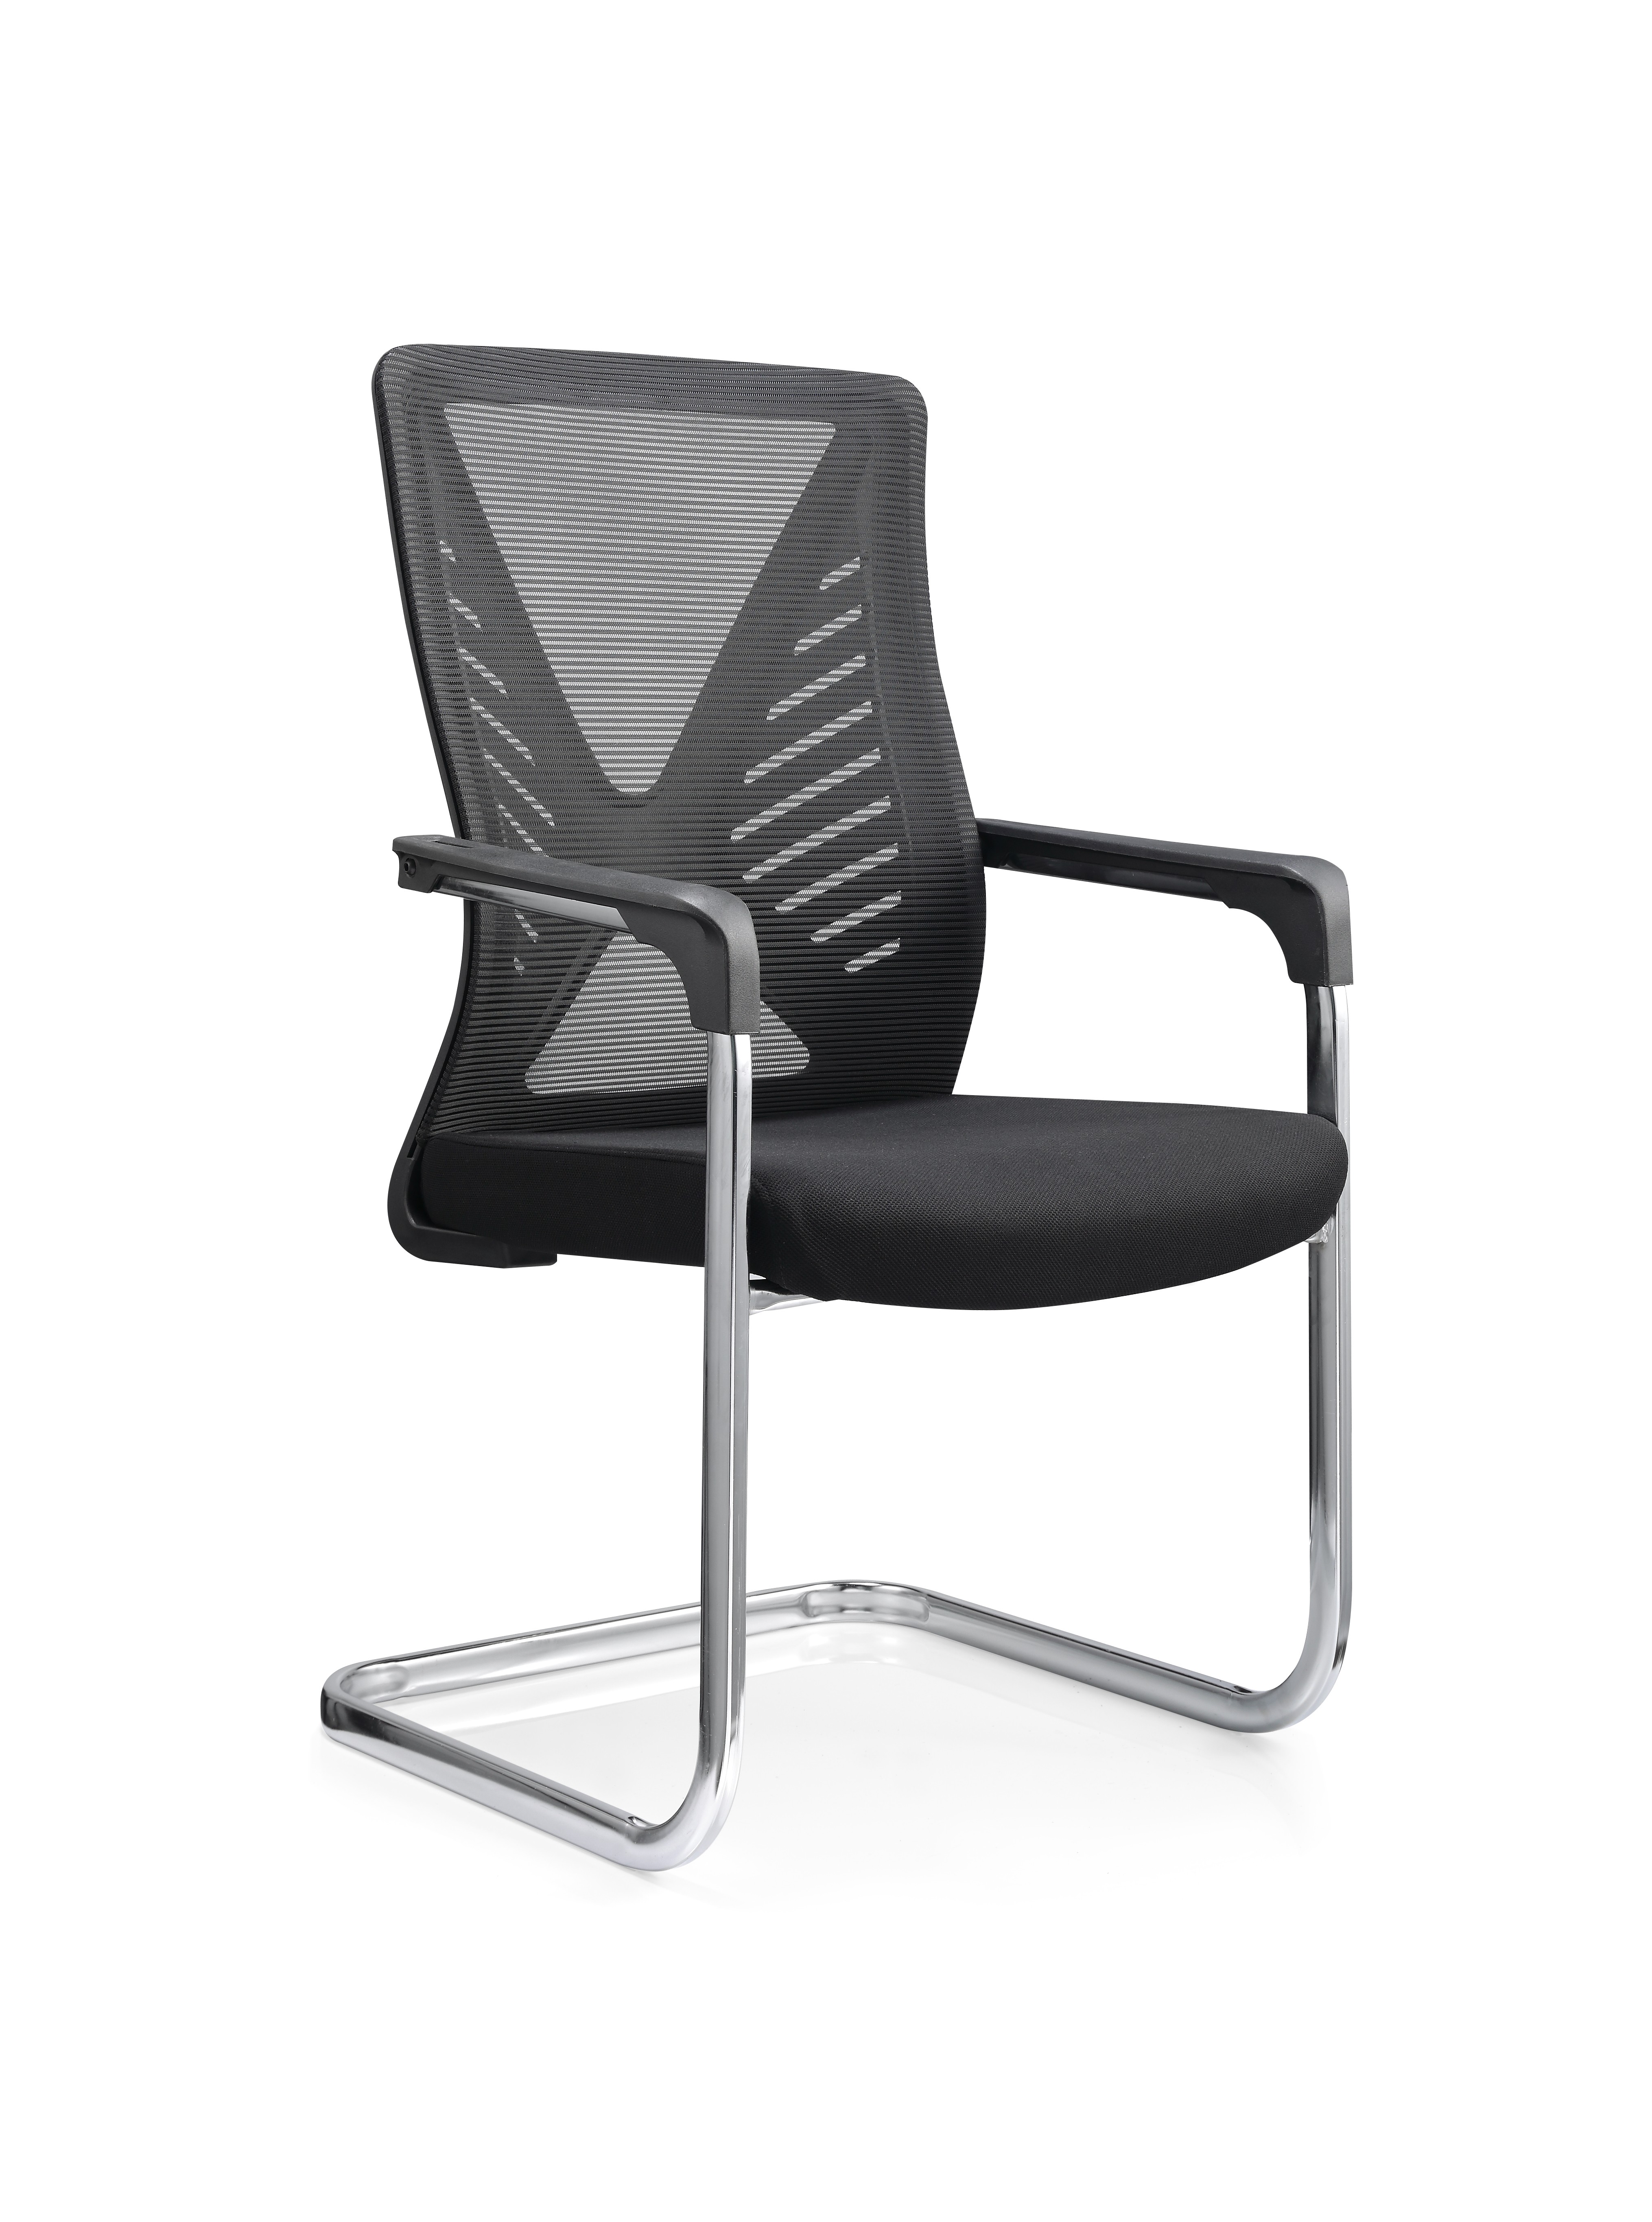 中国 Newcity 559C 办公家具制造现代设计网背会议室访客椅简单扶手椅网访客椅供应商中国佛山 制造商